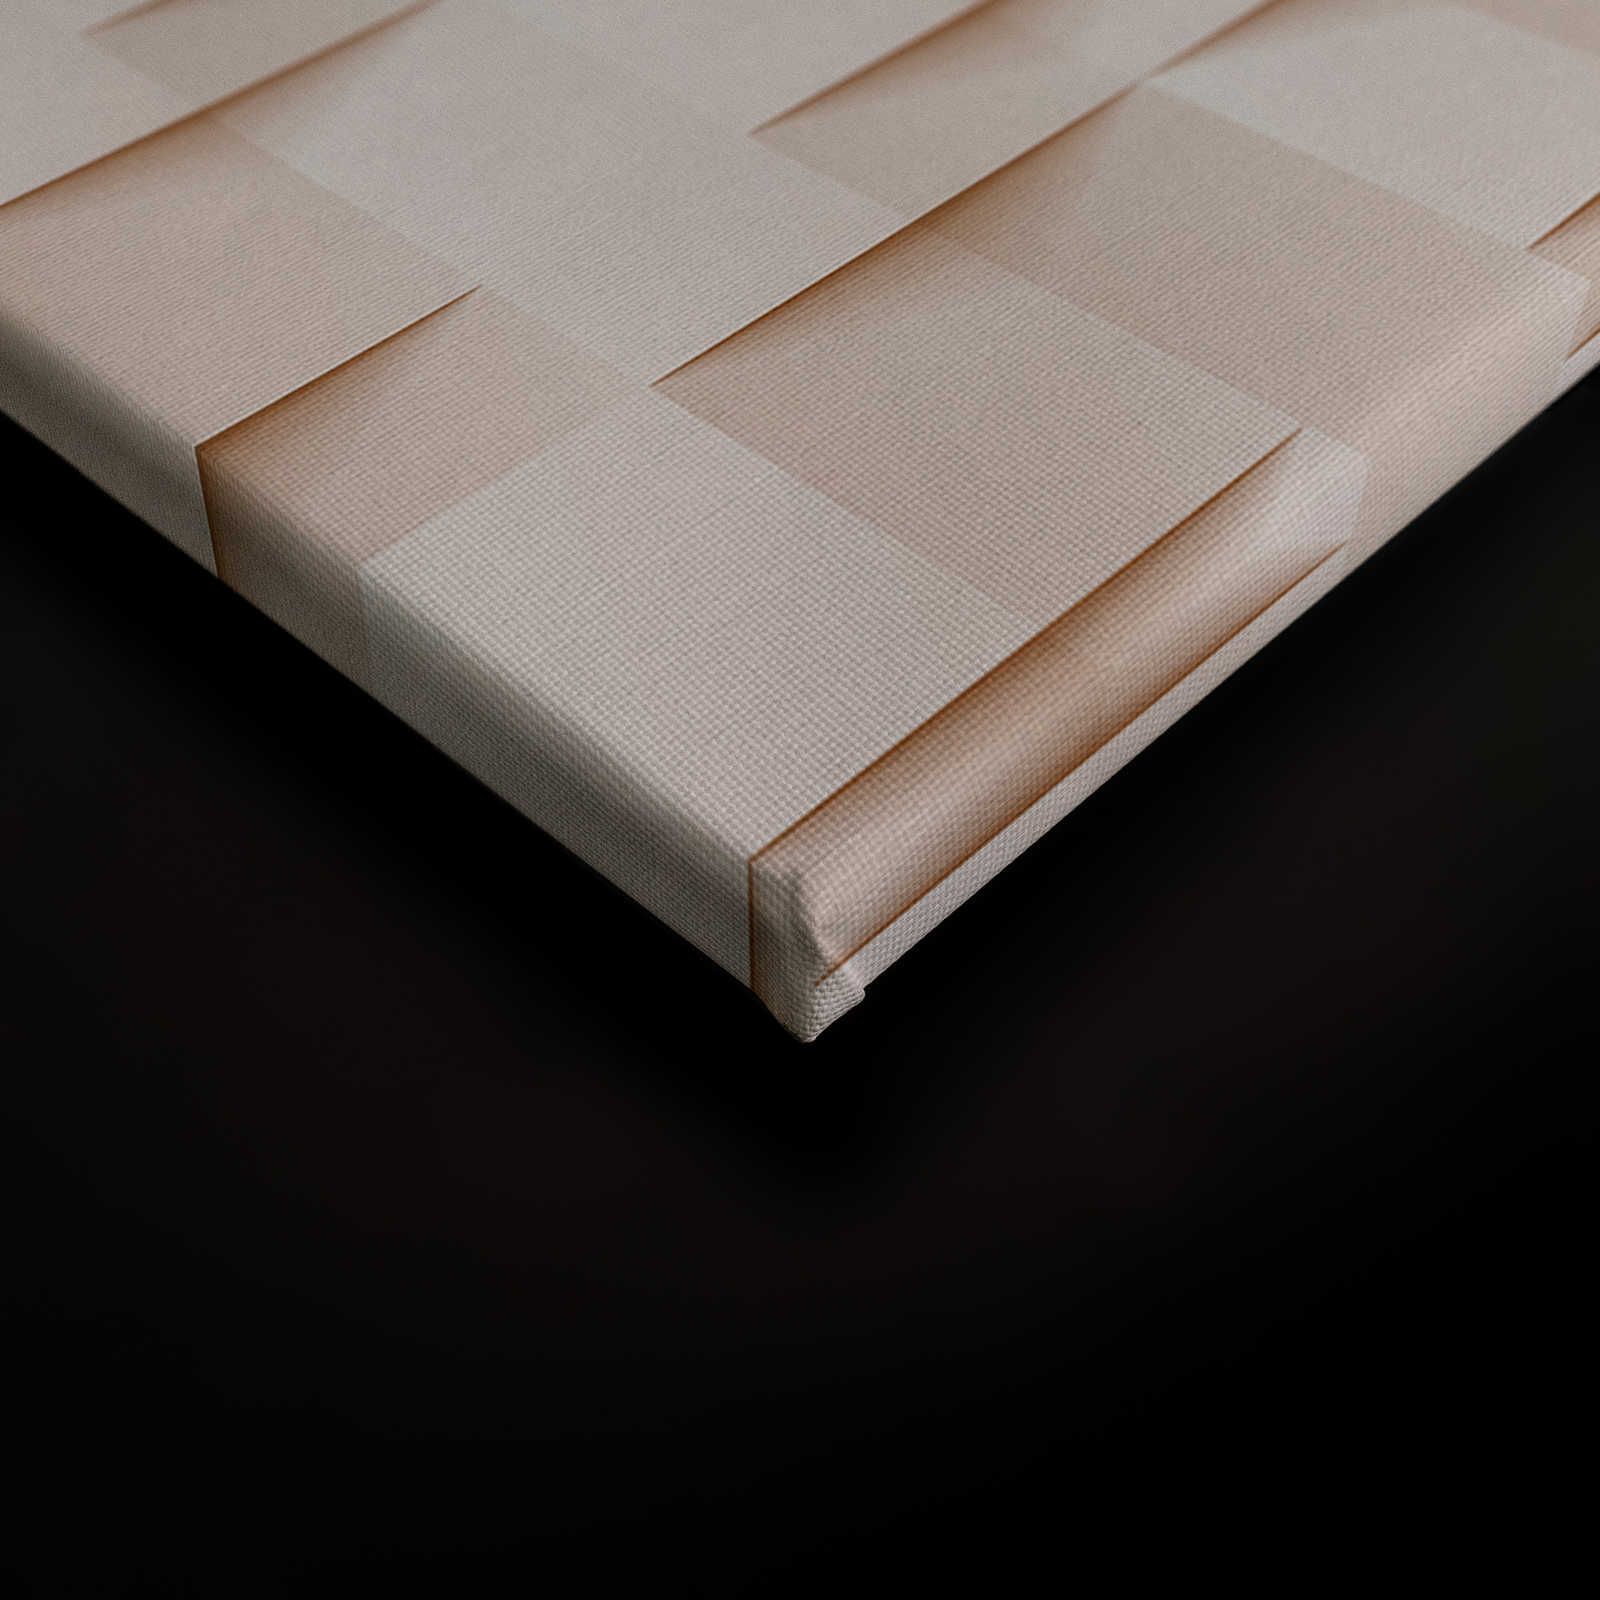             Casa de papel 1 - Lienzo pintura estructura 3D papel origami pliegues - 0,90 m x 0,60 m
        